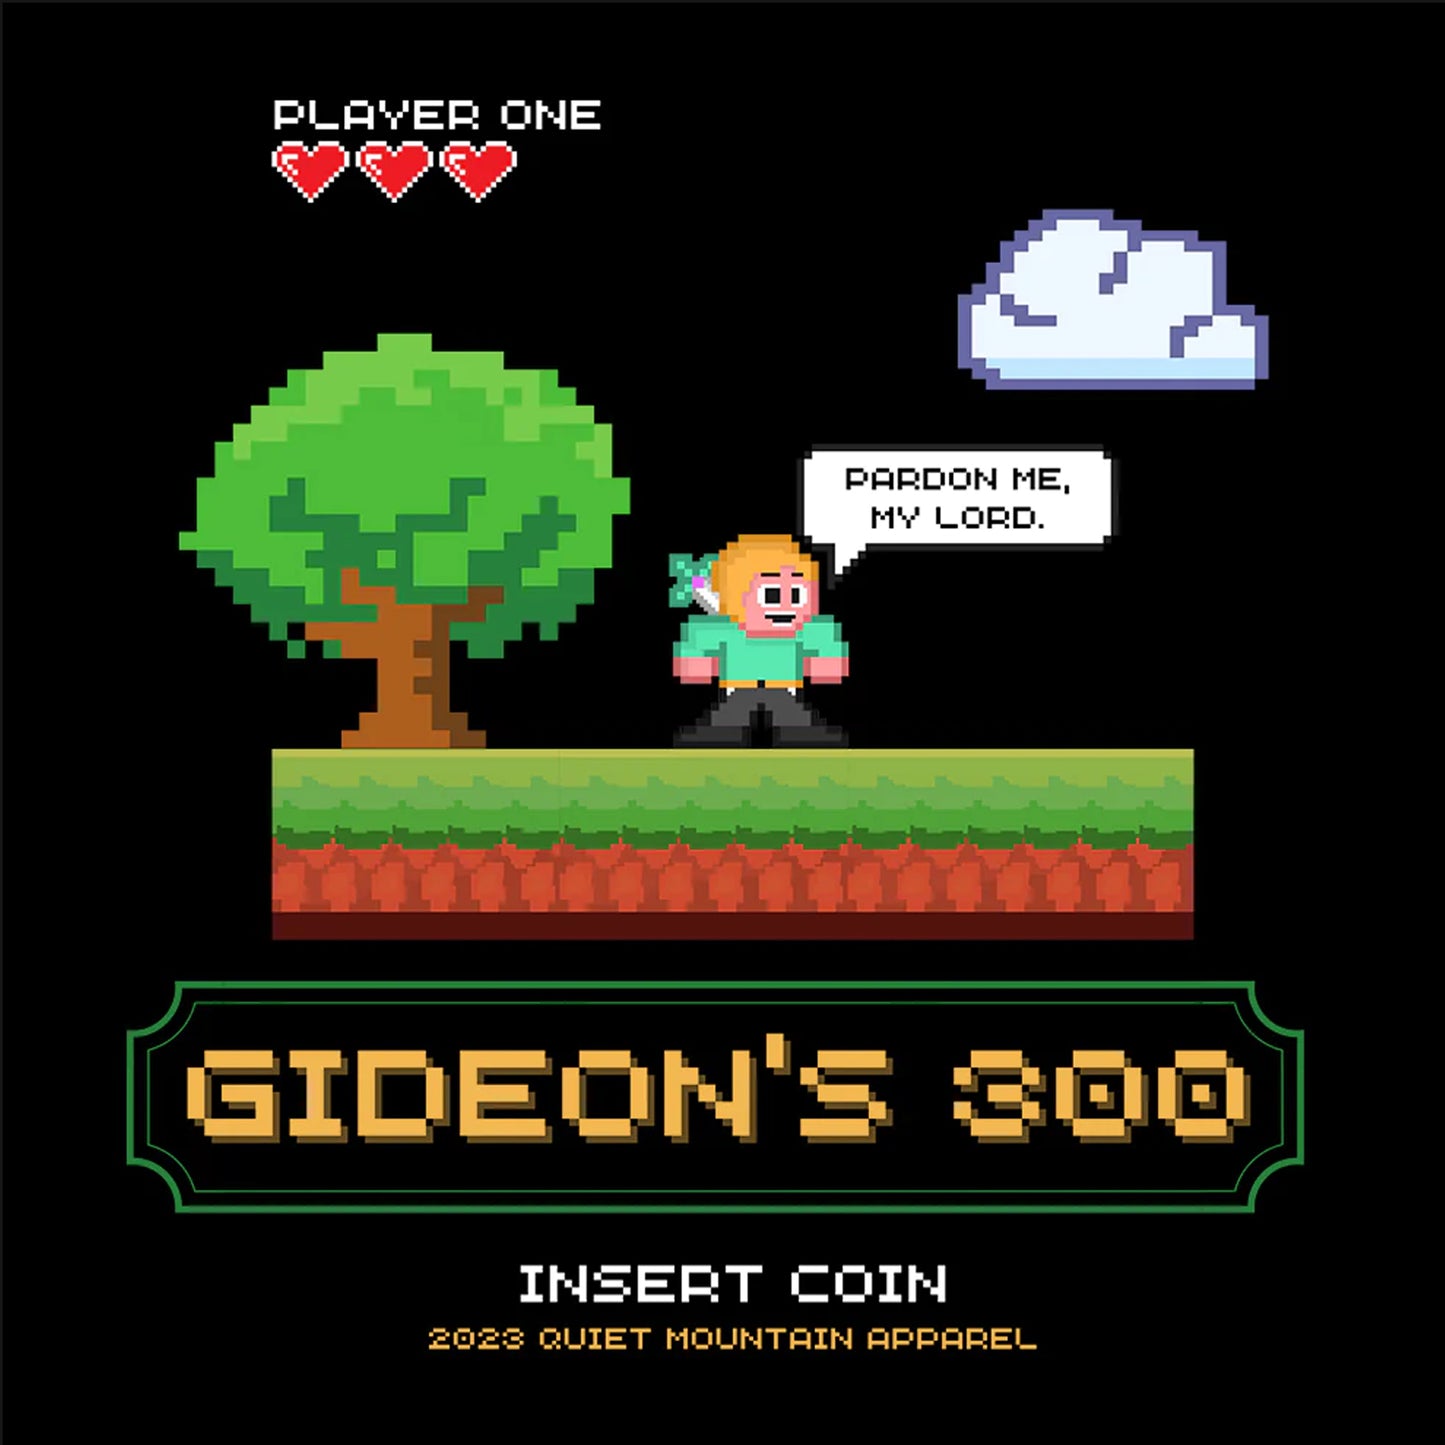 Gideon's 300 Unisex Cotton Tee